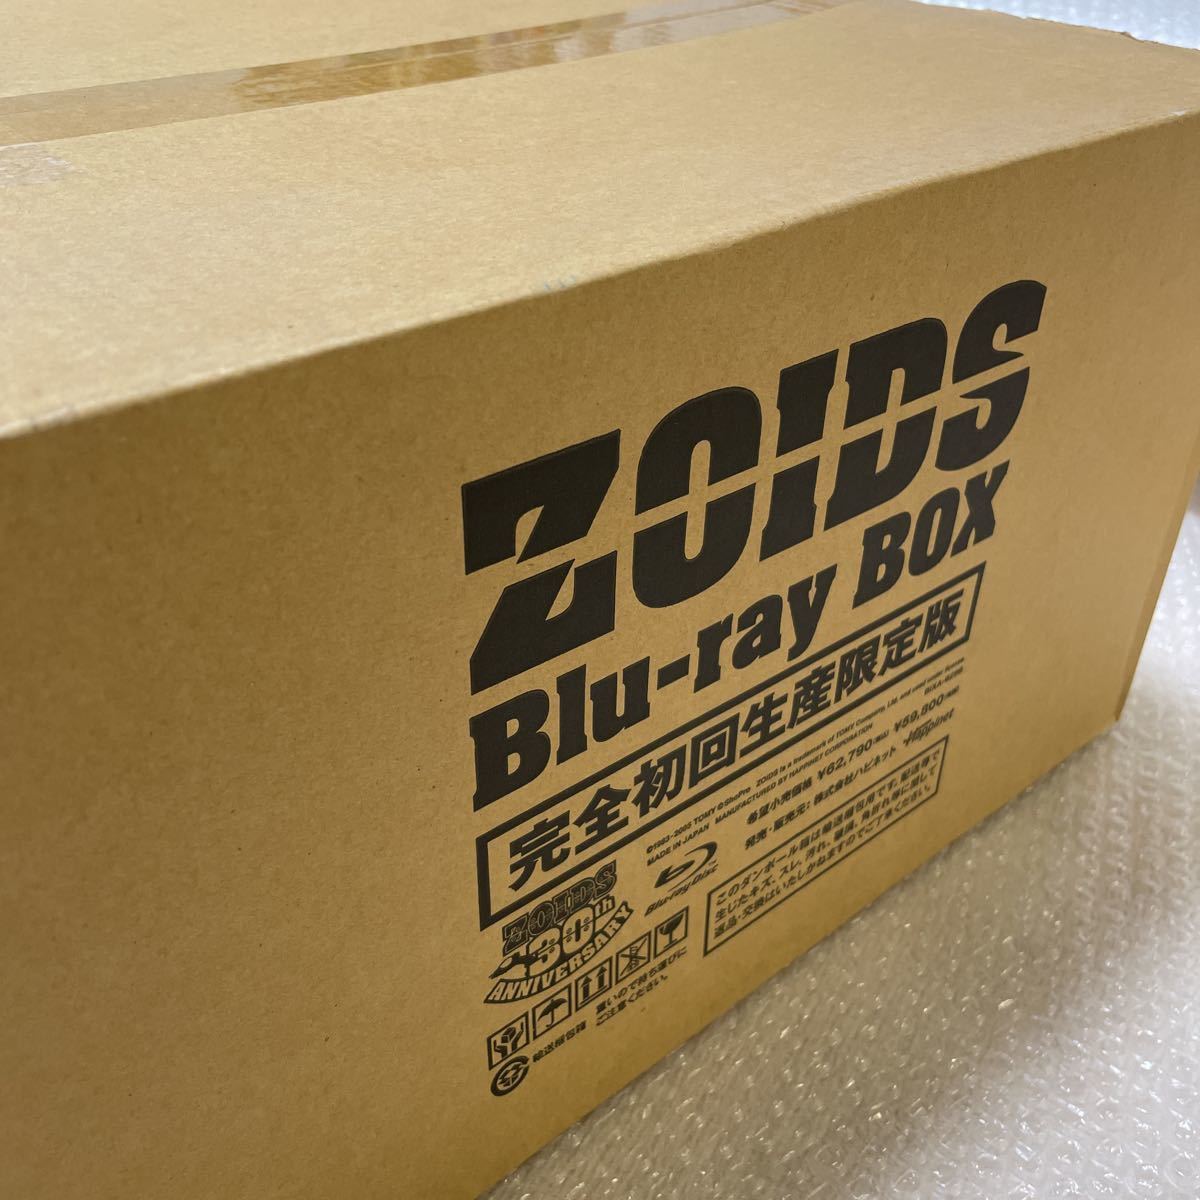 BD ゾイド -ZOIDS- Blu-ray BOX 【完全初回生産限定版】 1/72 HMMブレードライガー付 [ハピネット] 